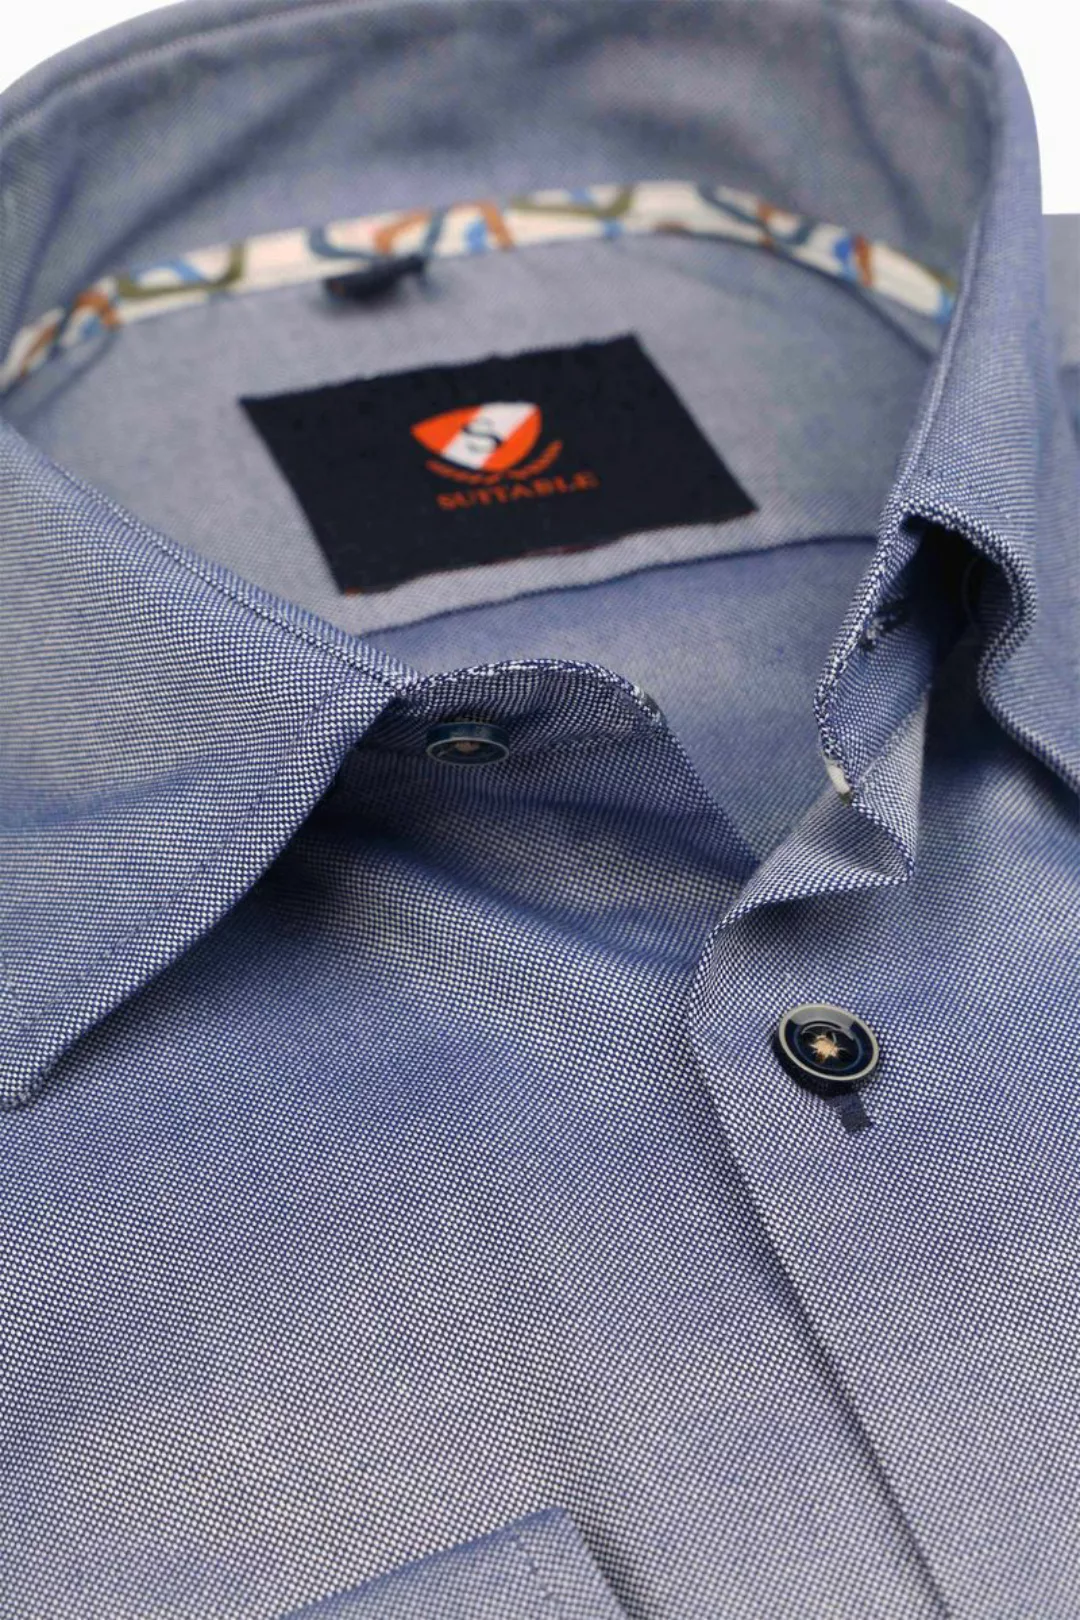 Suitable Hemd Oxford Blau - Größe 40 günstig online kaufen